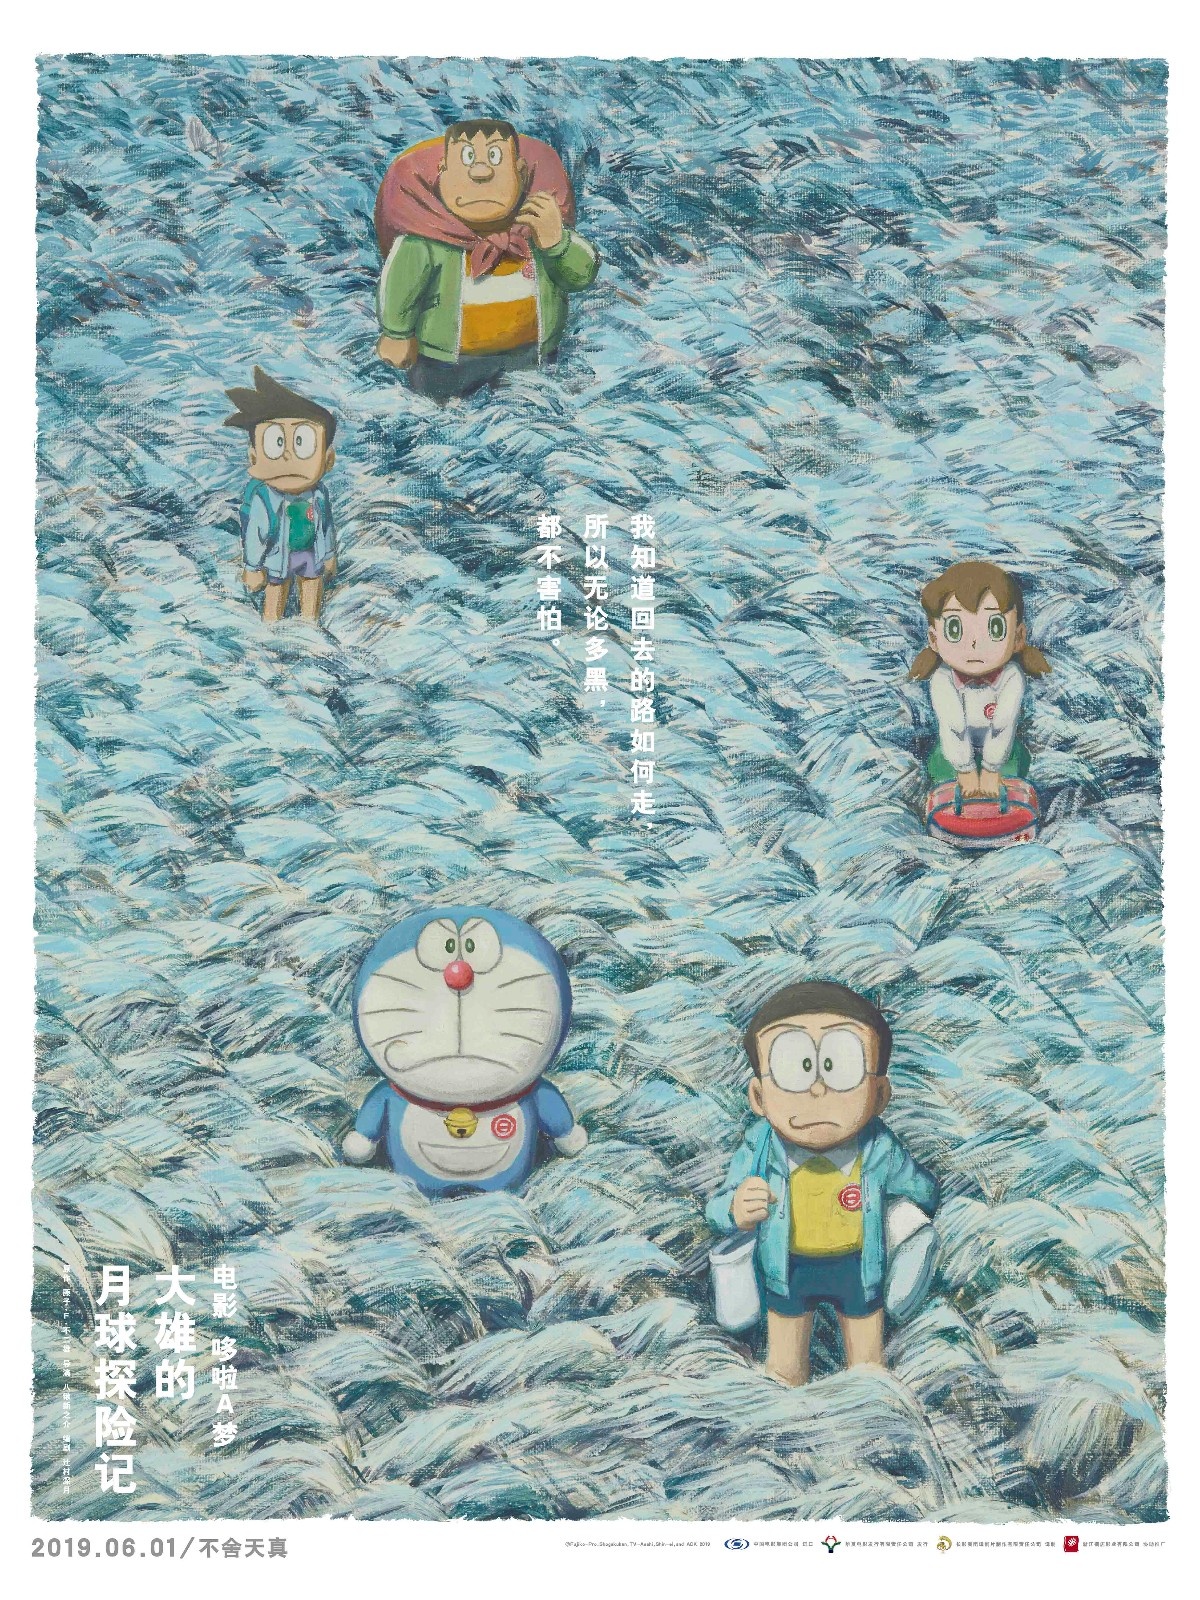 《哆啦A梦》剧场版曝“遥望月亮”版手绘海报